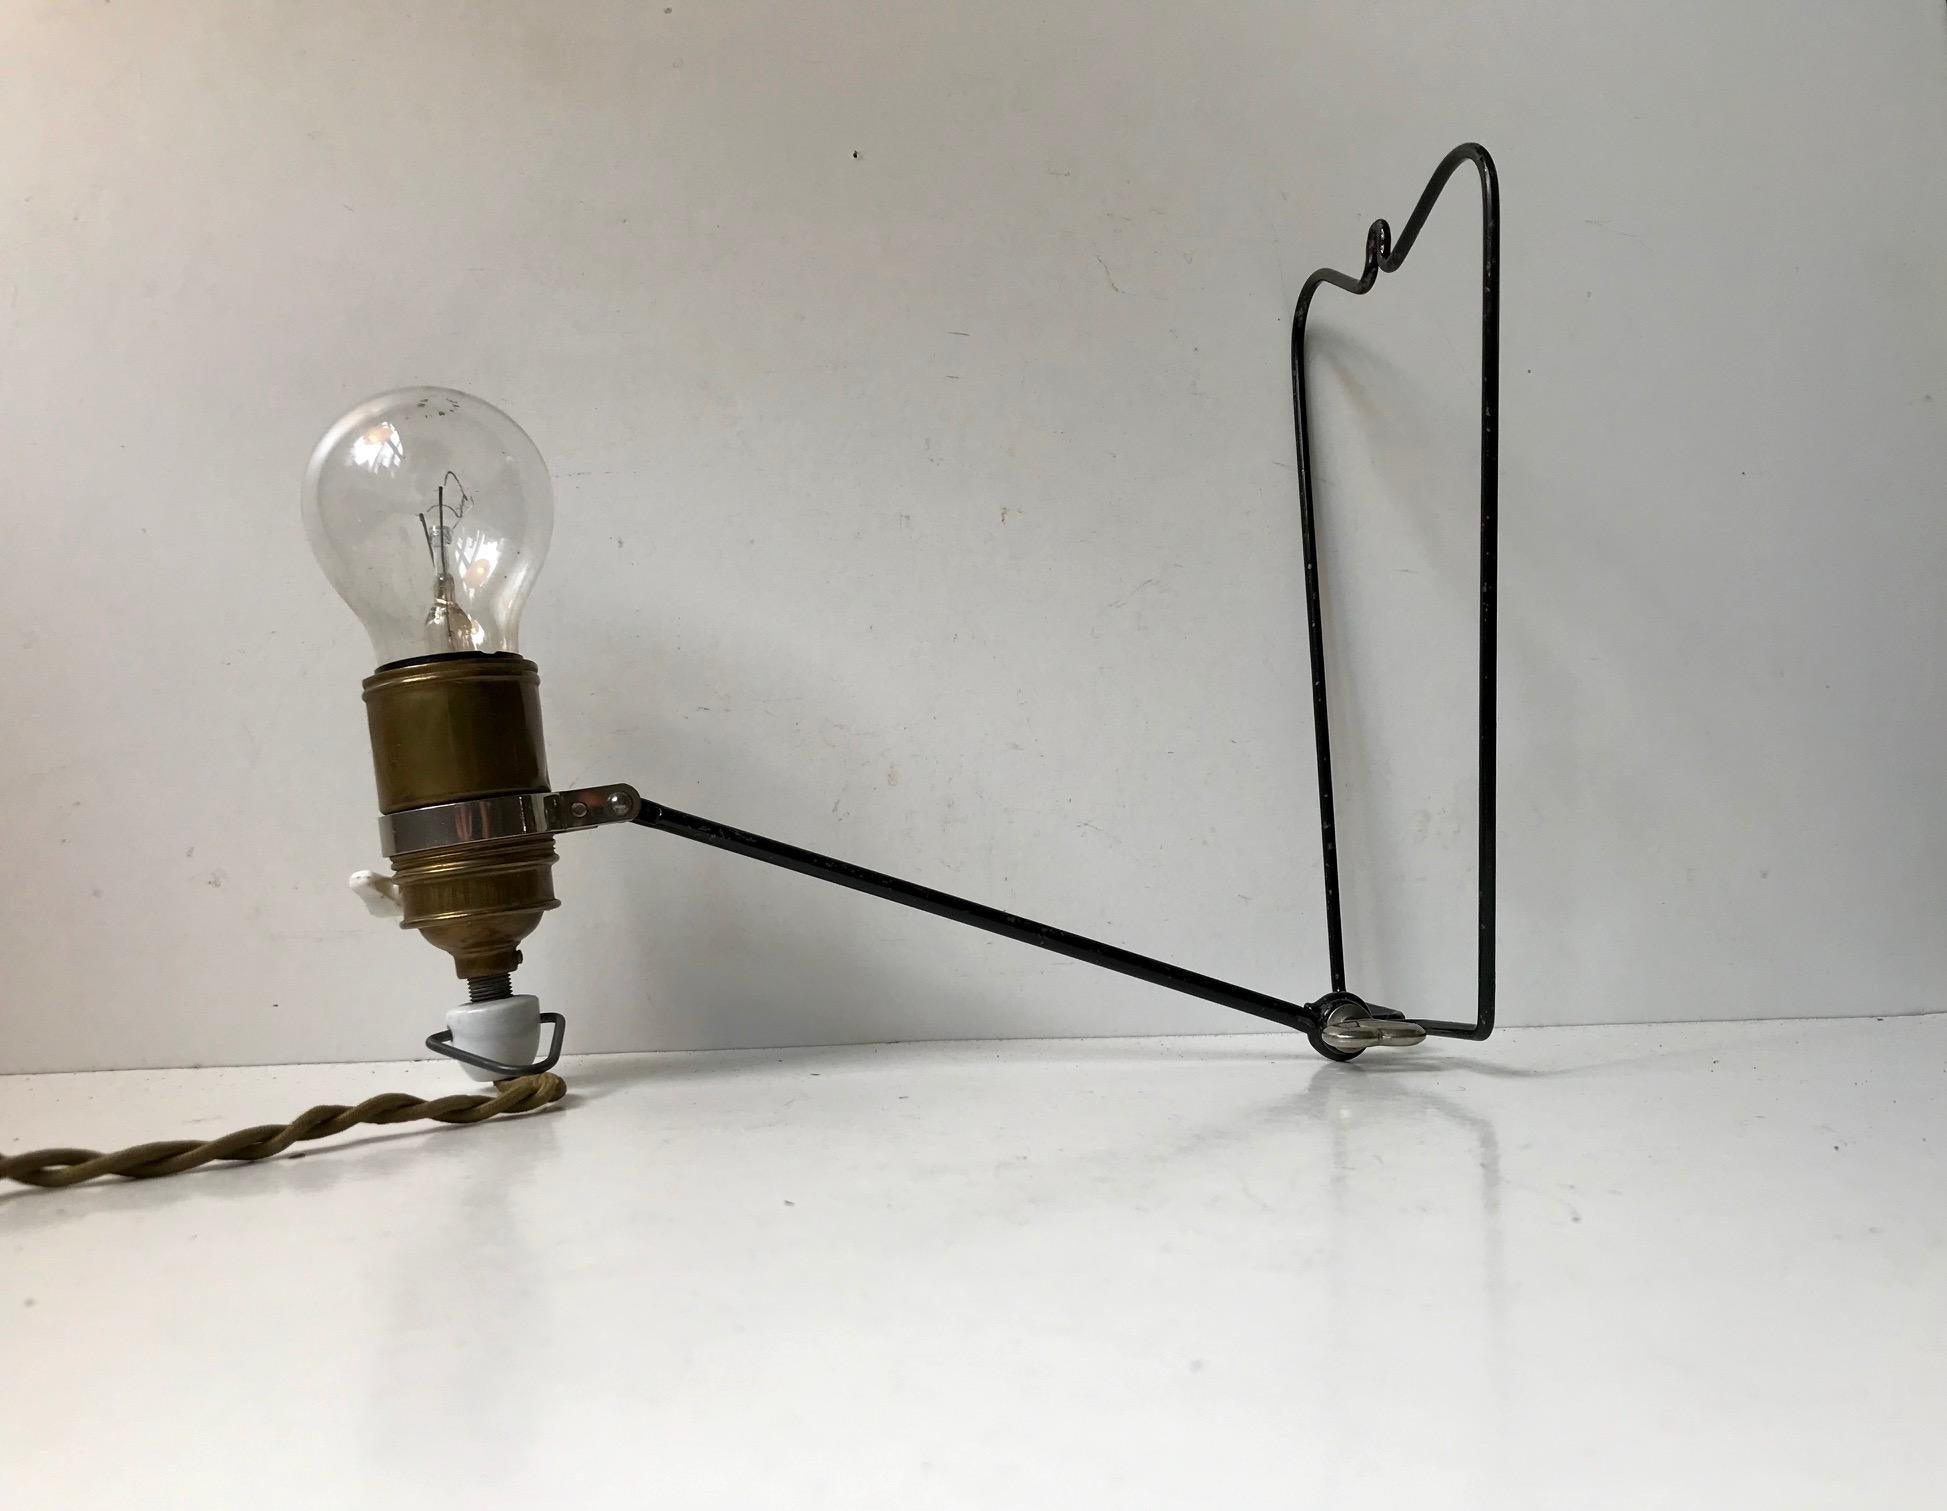 Petite lampe de table ou murale en fil métallique d'aspect industriel minimal, dans son état brut d'origine. Il est réglable et peut être suspendu comme une applique murale ou utilisé comme une petite lampe de bureau minimale. Il comporte un